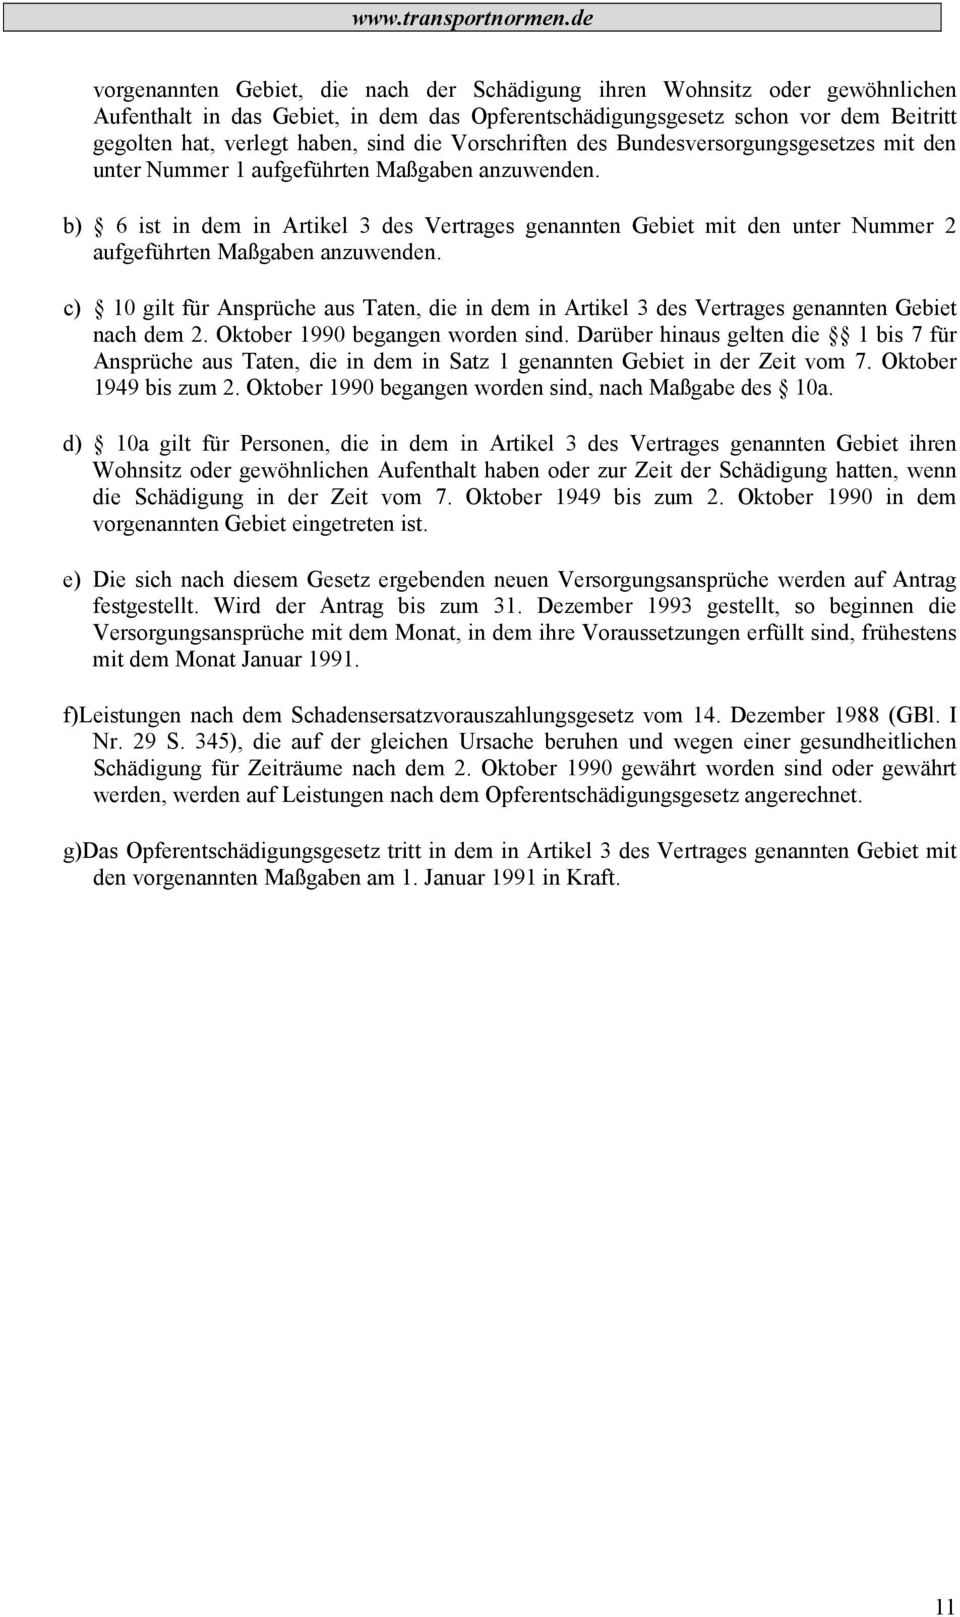 b) 6 ist in dem in Artikel 3 des Vertrages genannten Gebiet mit den unter Nummer 2 aufgeführten Maßgaben anzuwenden.